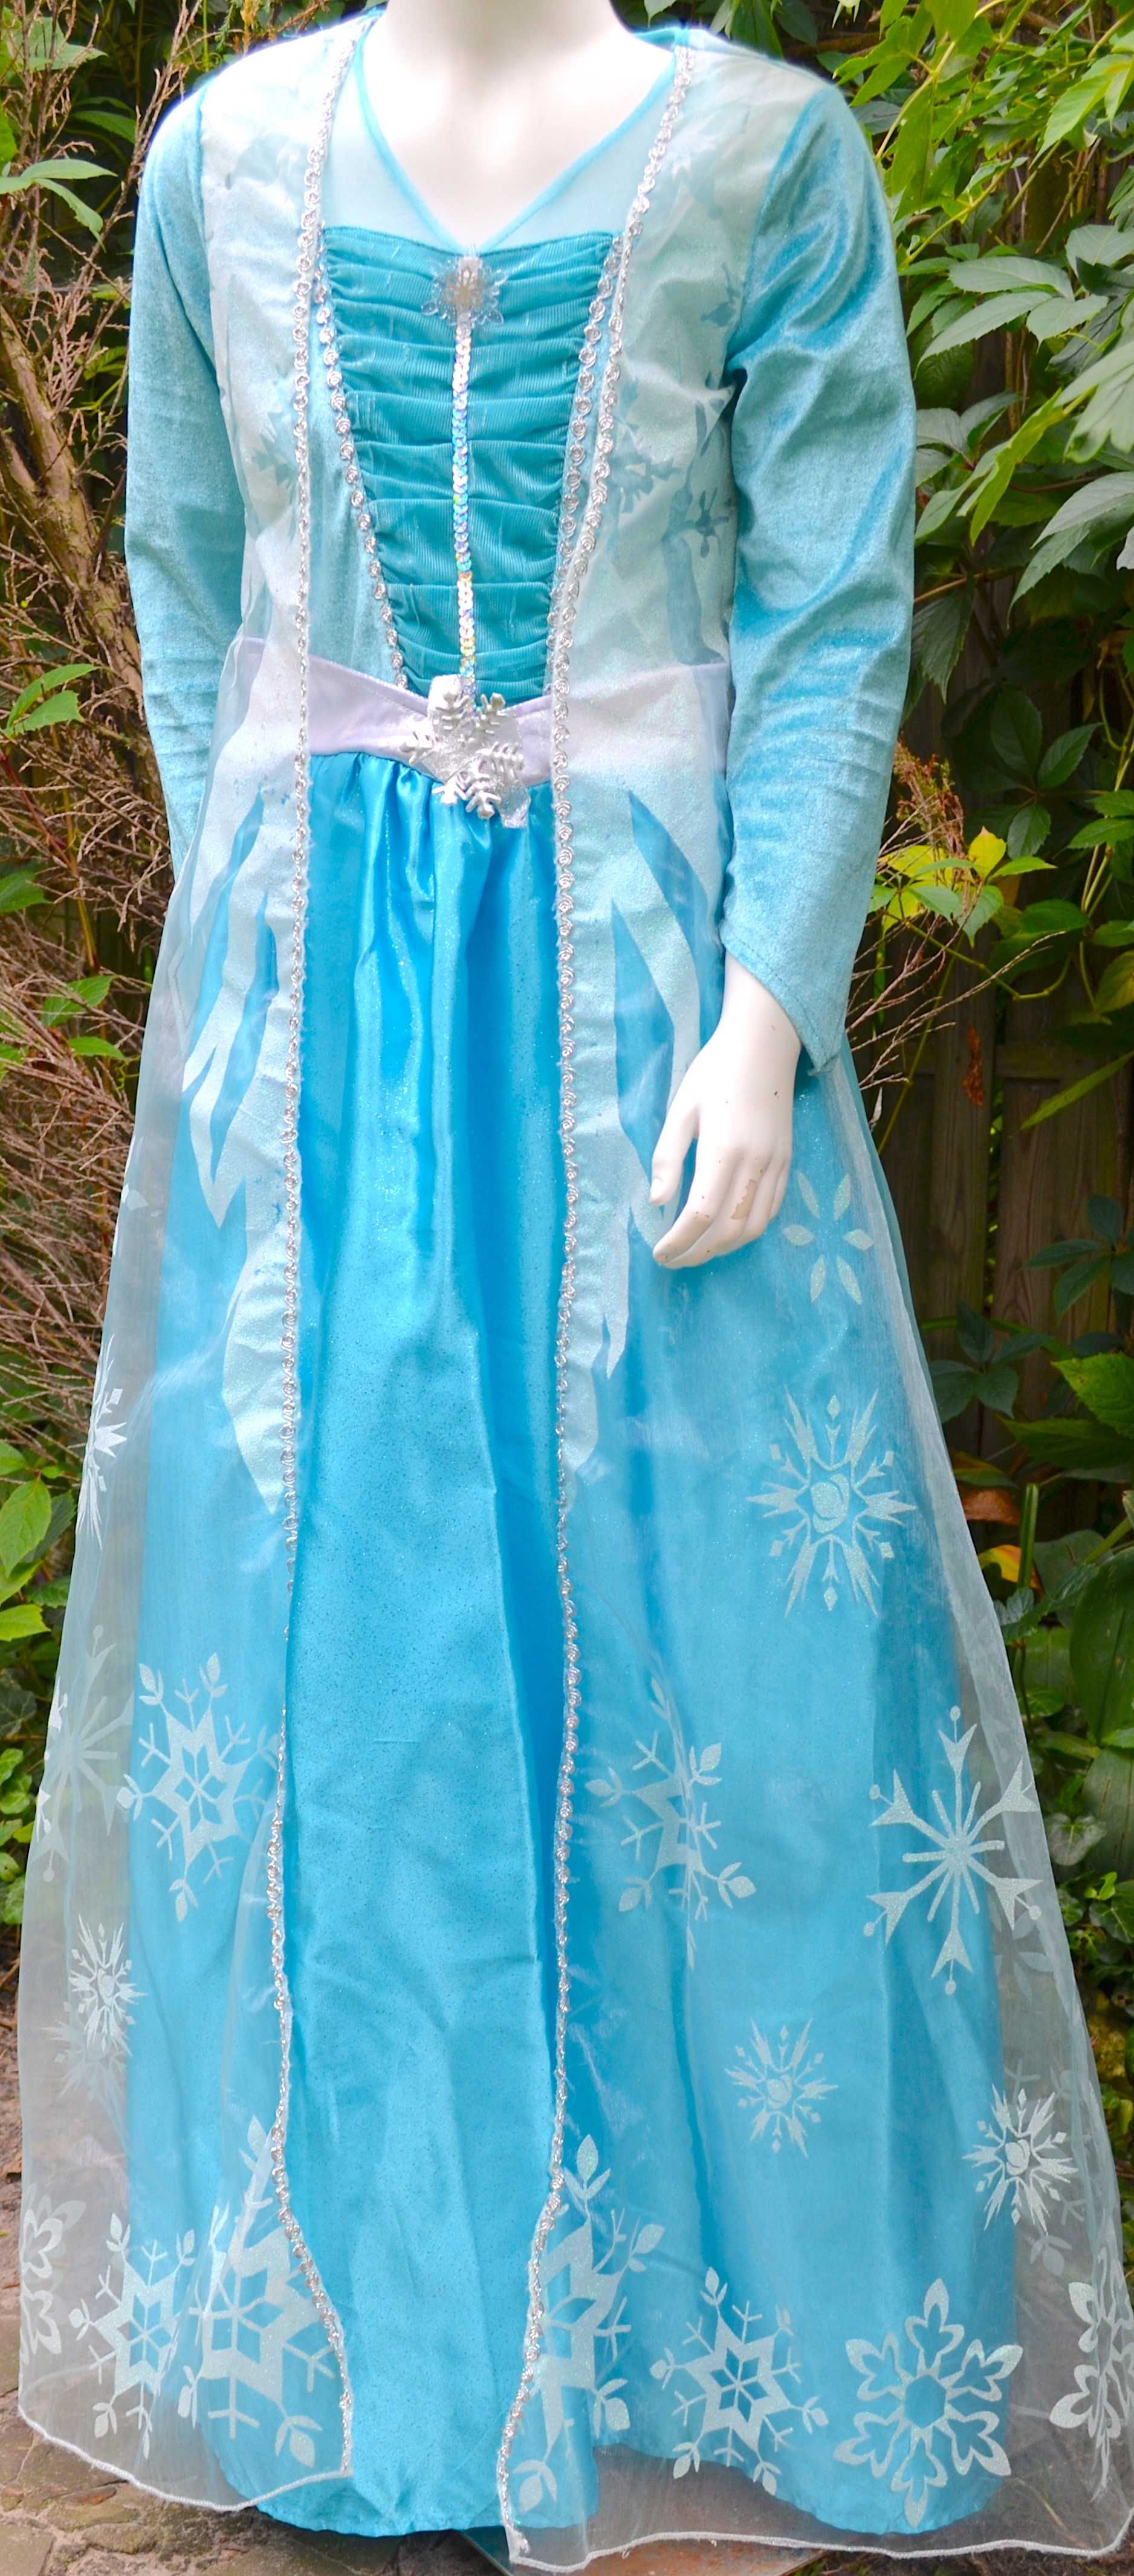 Фирменное платье со шлейфом Фрозен Эльза от Дисней